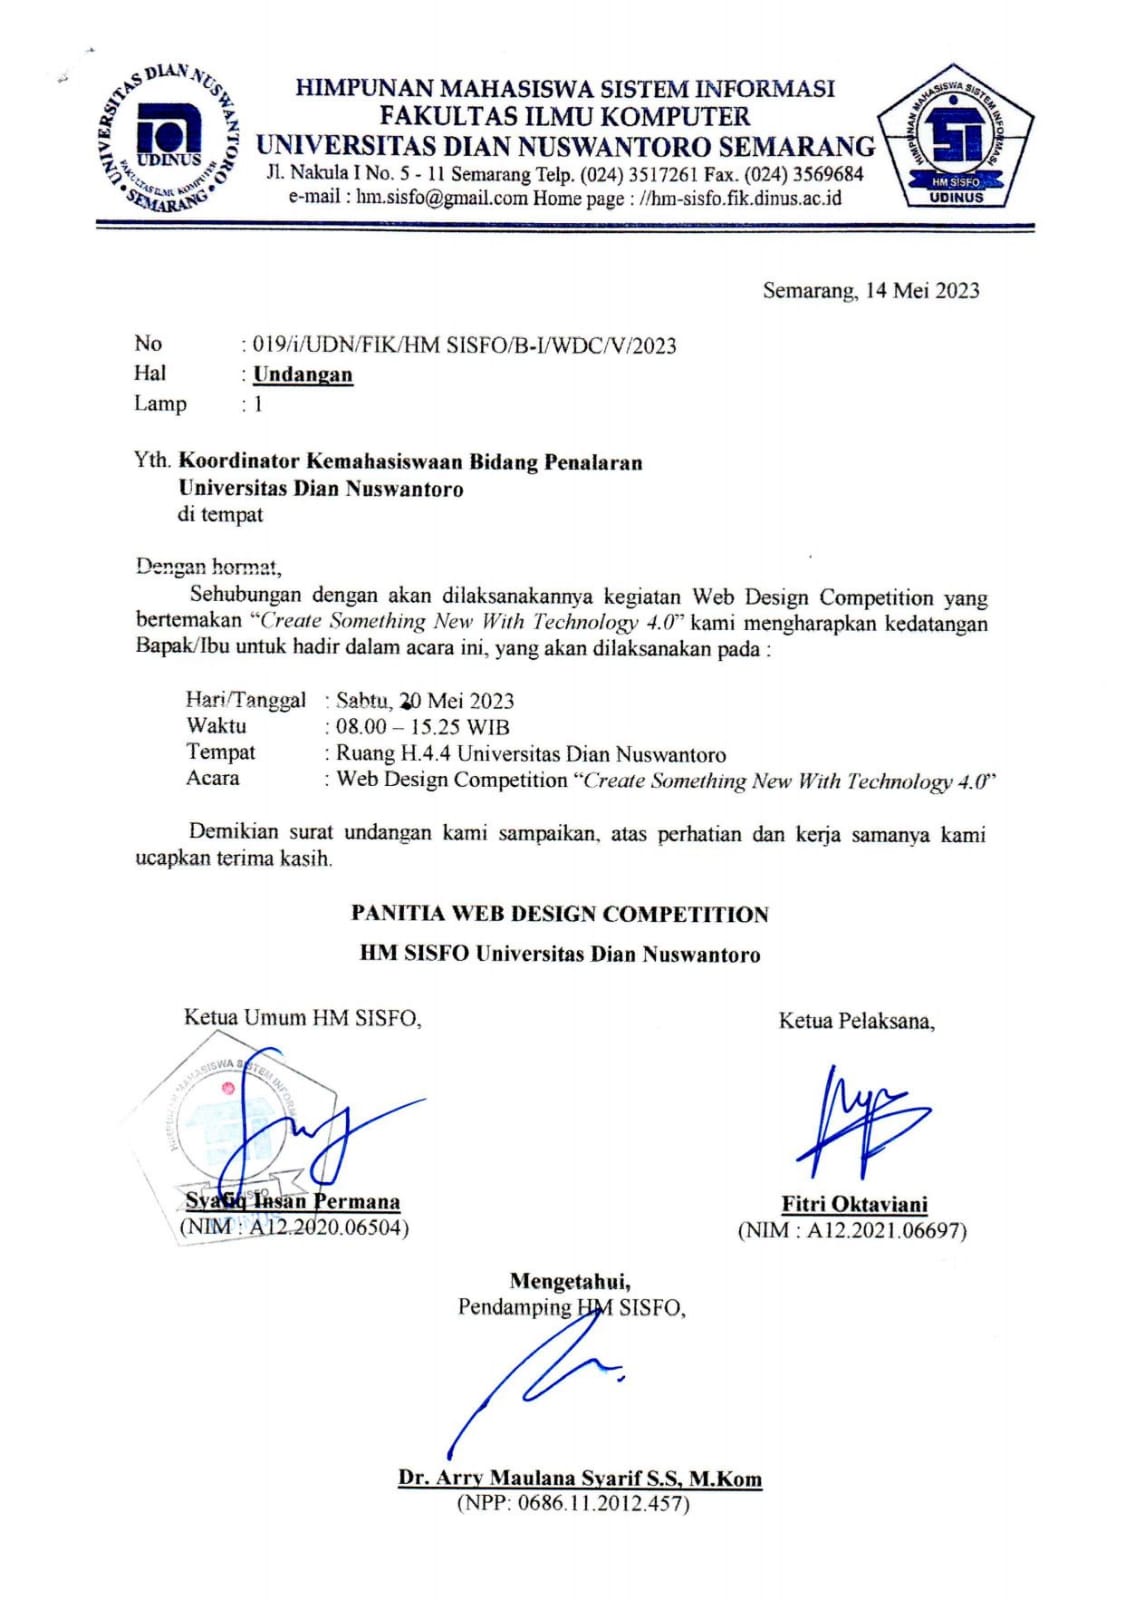 Surat Undangan Koordinator Kemahasiswaan Bidang Penalaran Universitas Dian Nuswantoro